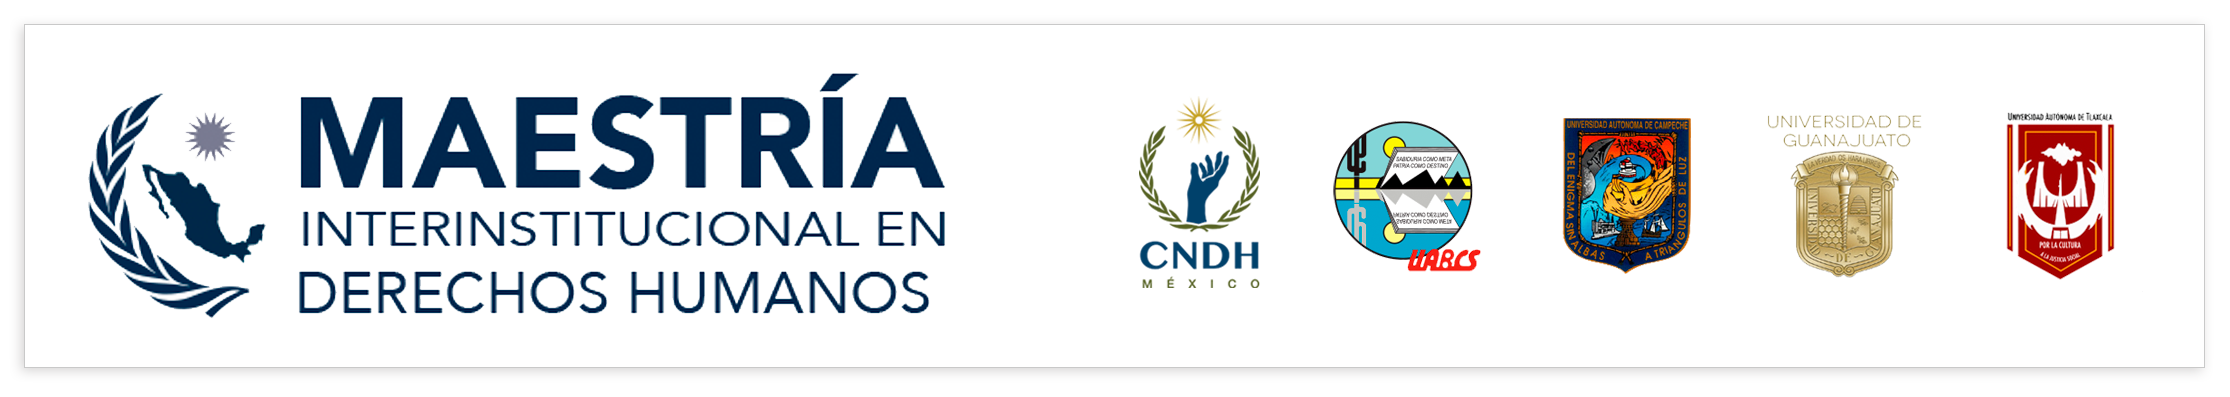 Maestría Interinstitucional en Derechos Humanos, logotipos: CNDH, UABCS, UAC, UG, UAT